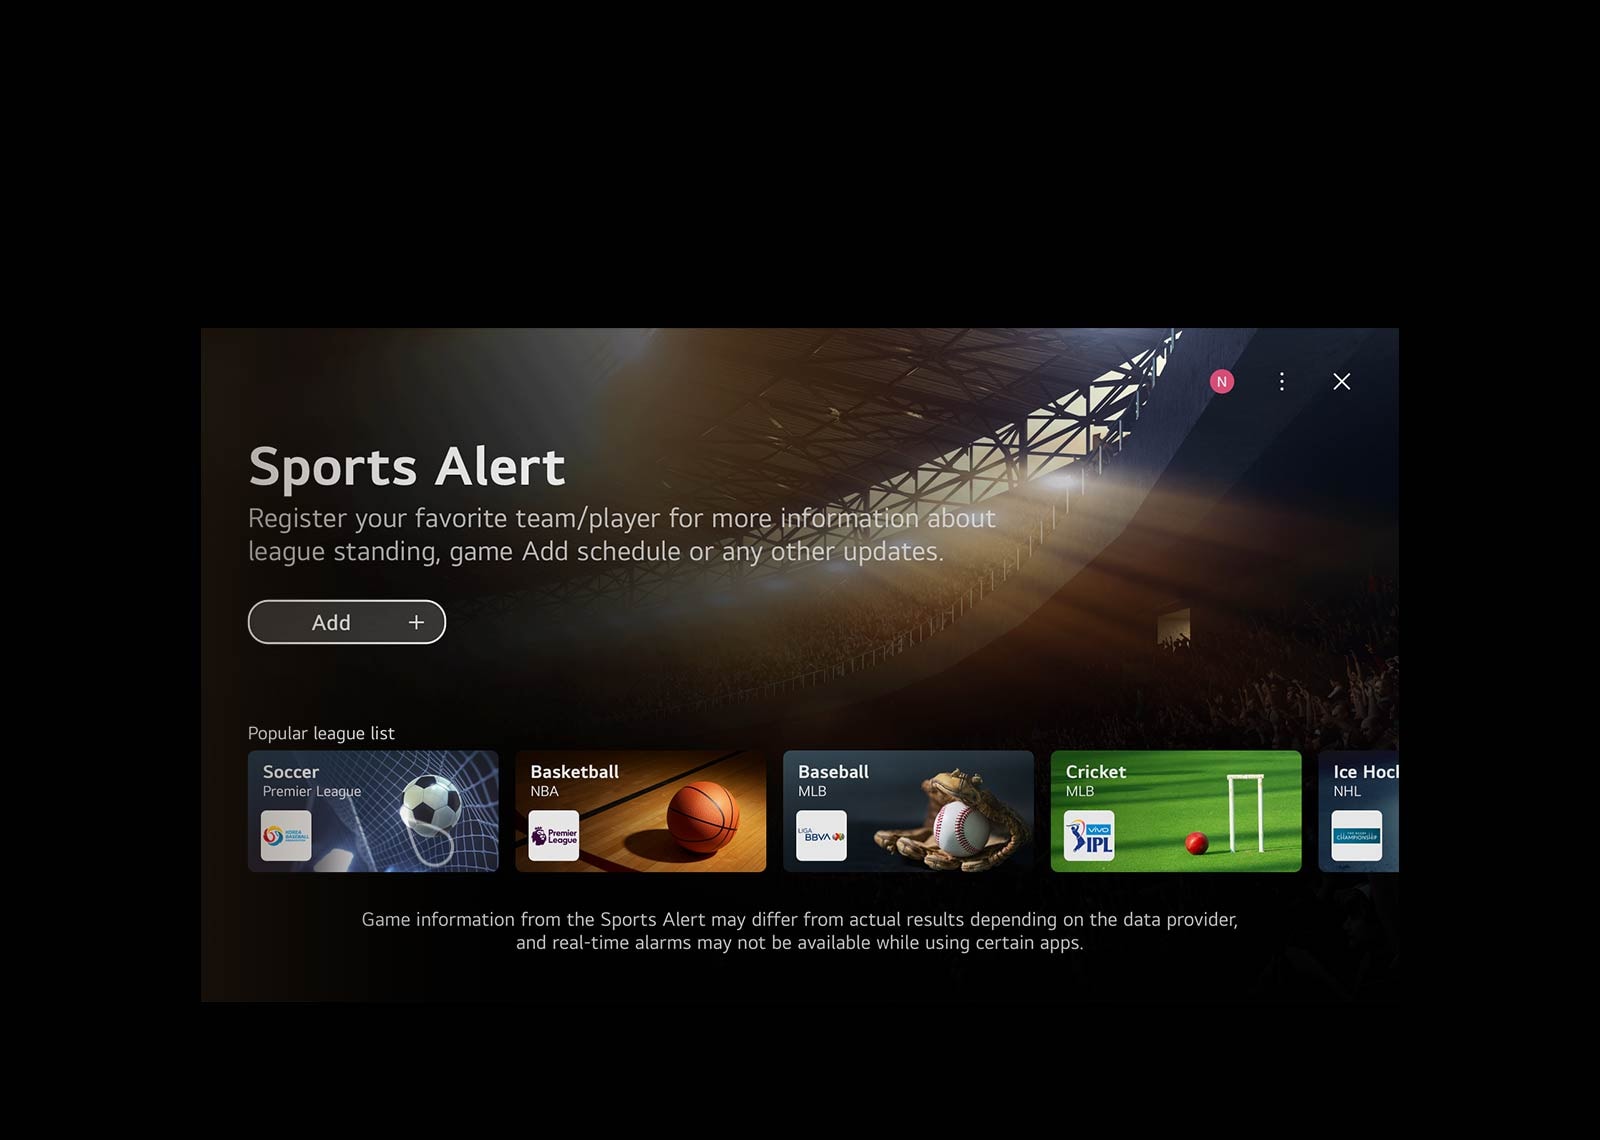 Відео-перегляд домашнього екрана WebOS.  Курсор натискає на вкладку швидких ігор, а потім на вкладку швидких видів спорту і в обох випадках переміщається на екрани зі зв'язаним контентом.